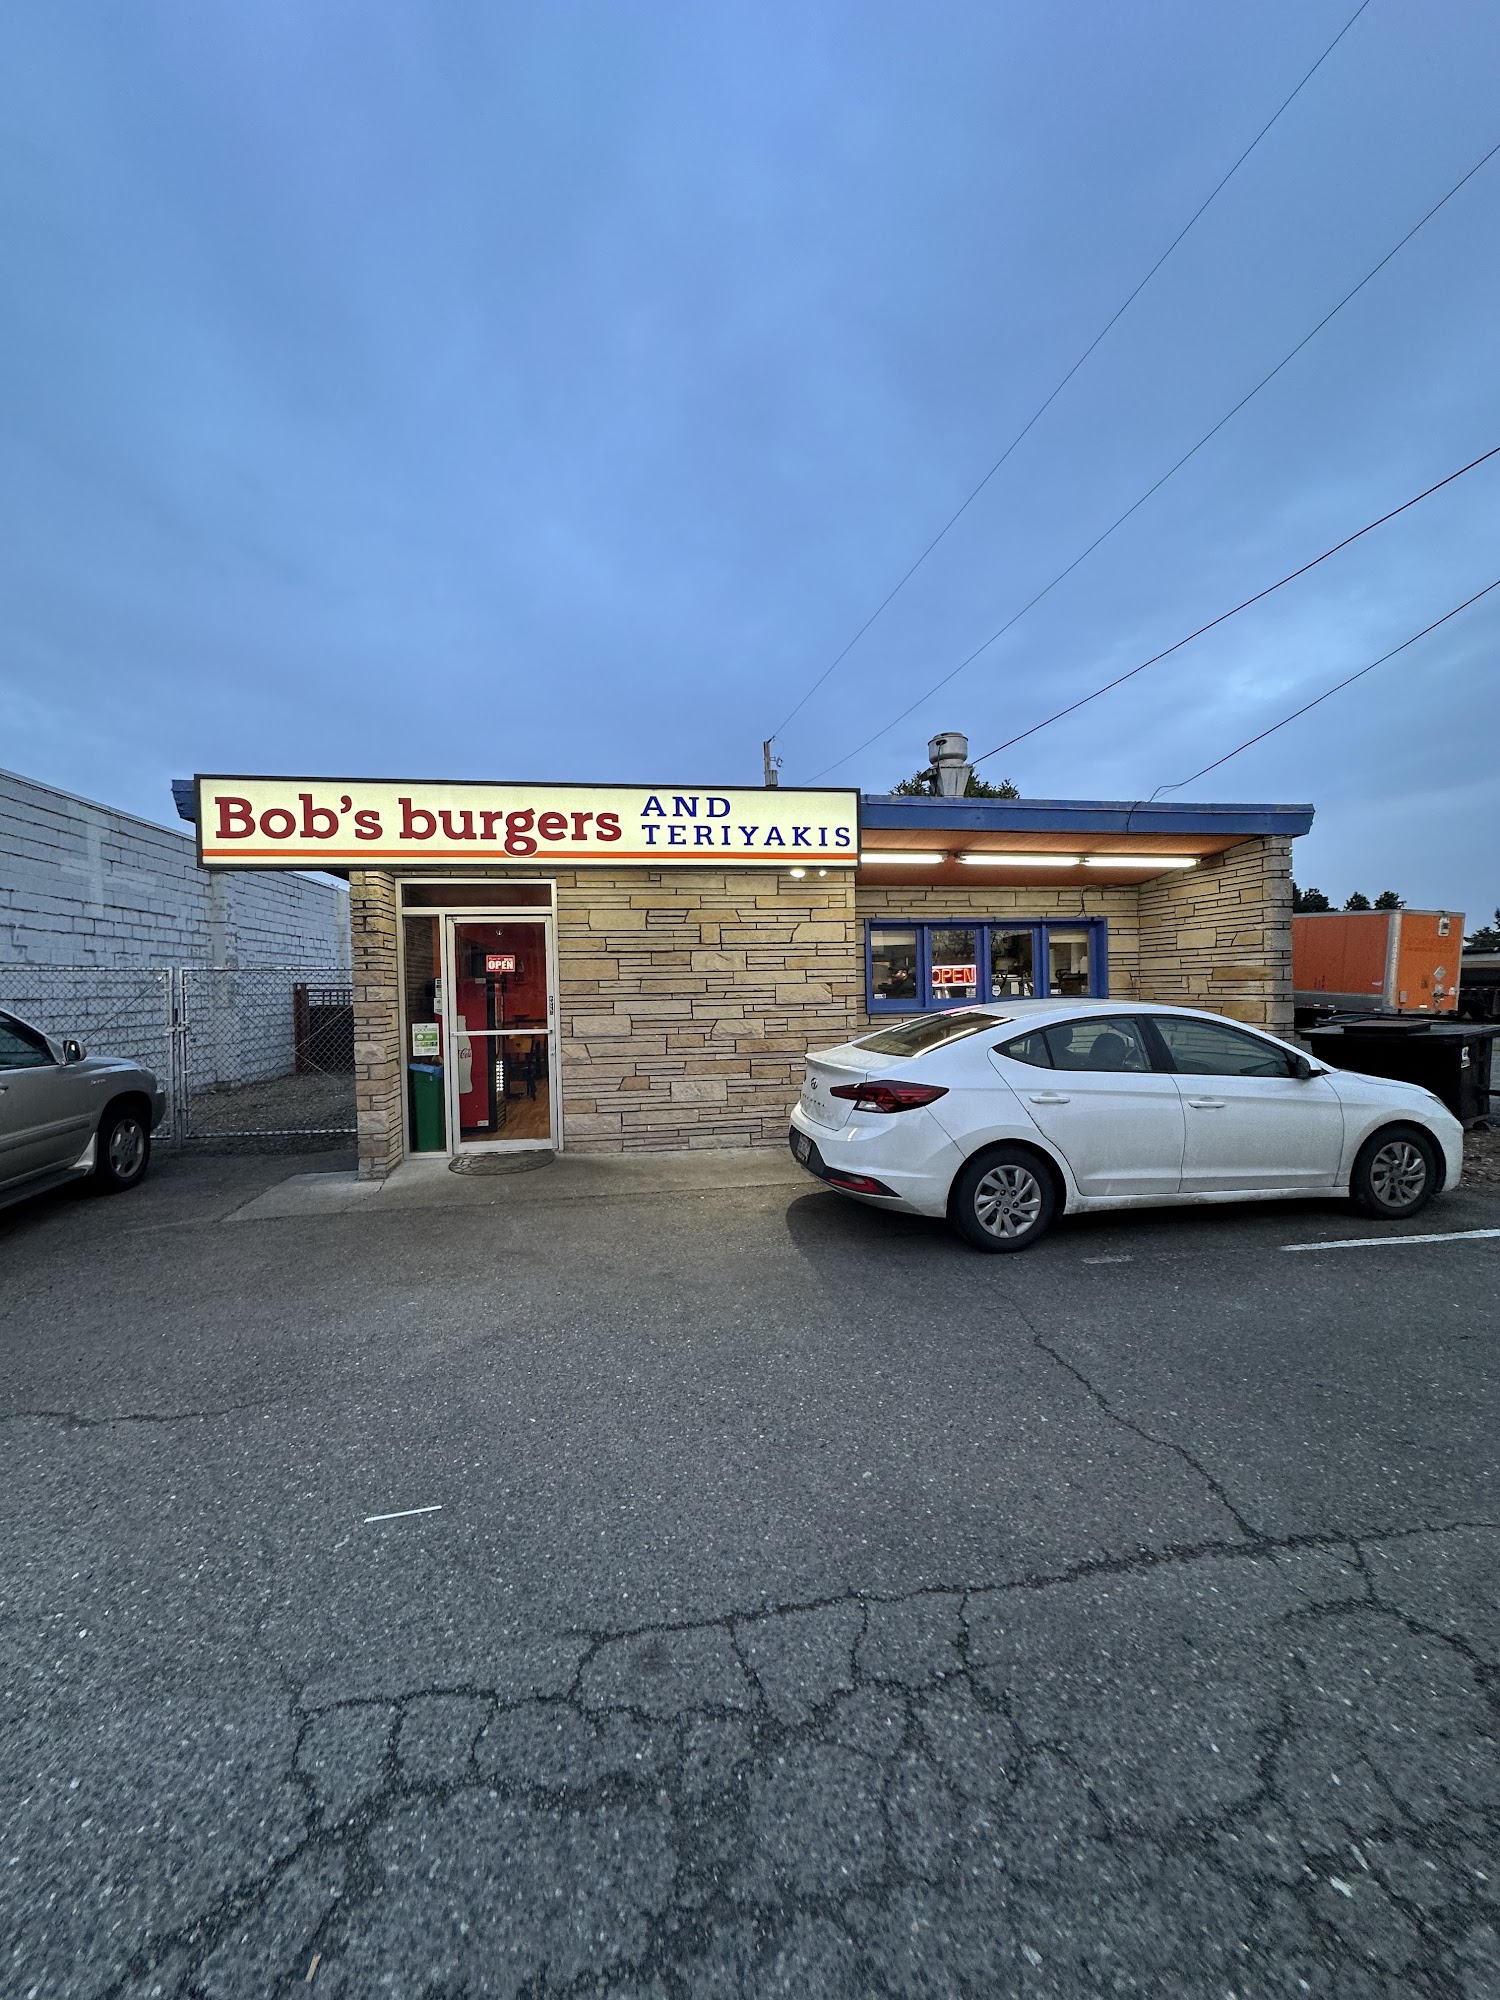 Bobs burgers and teriyakis